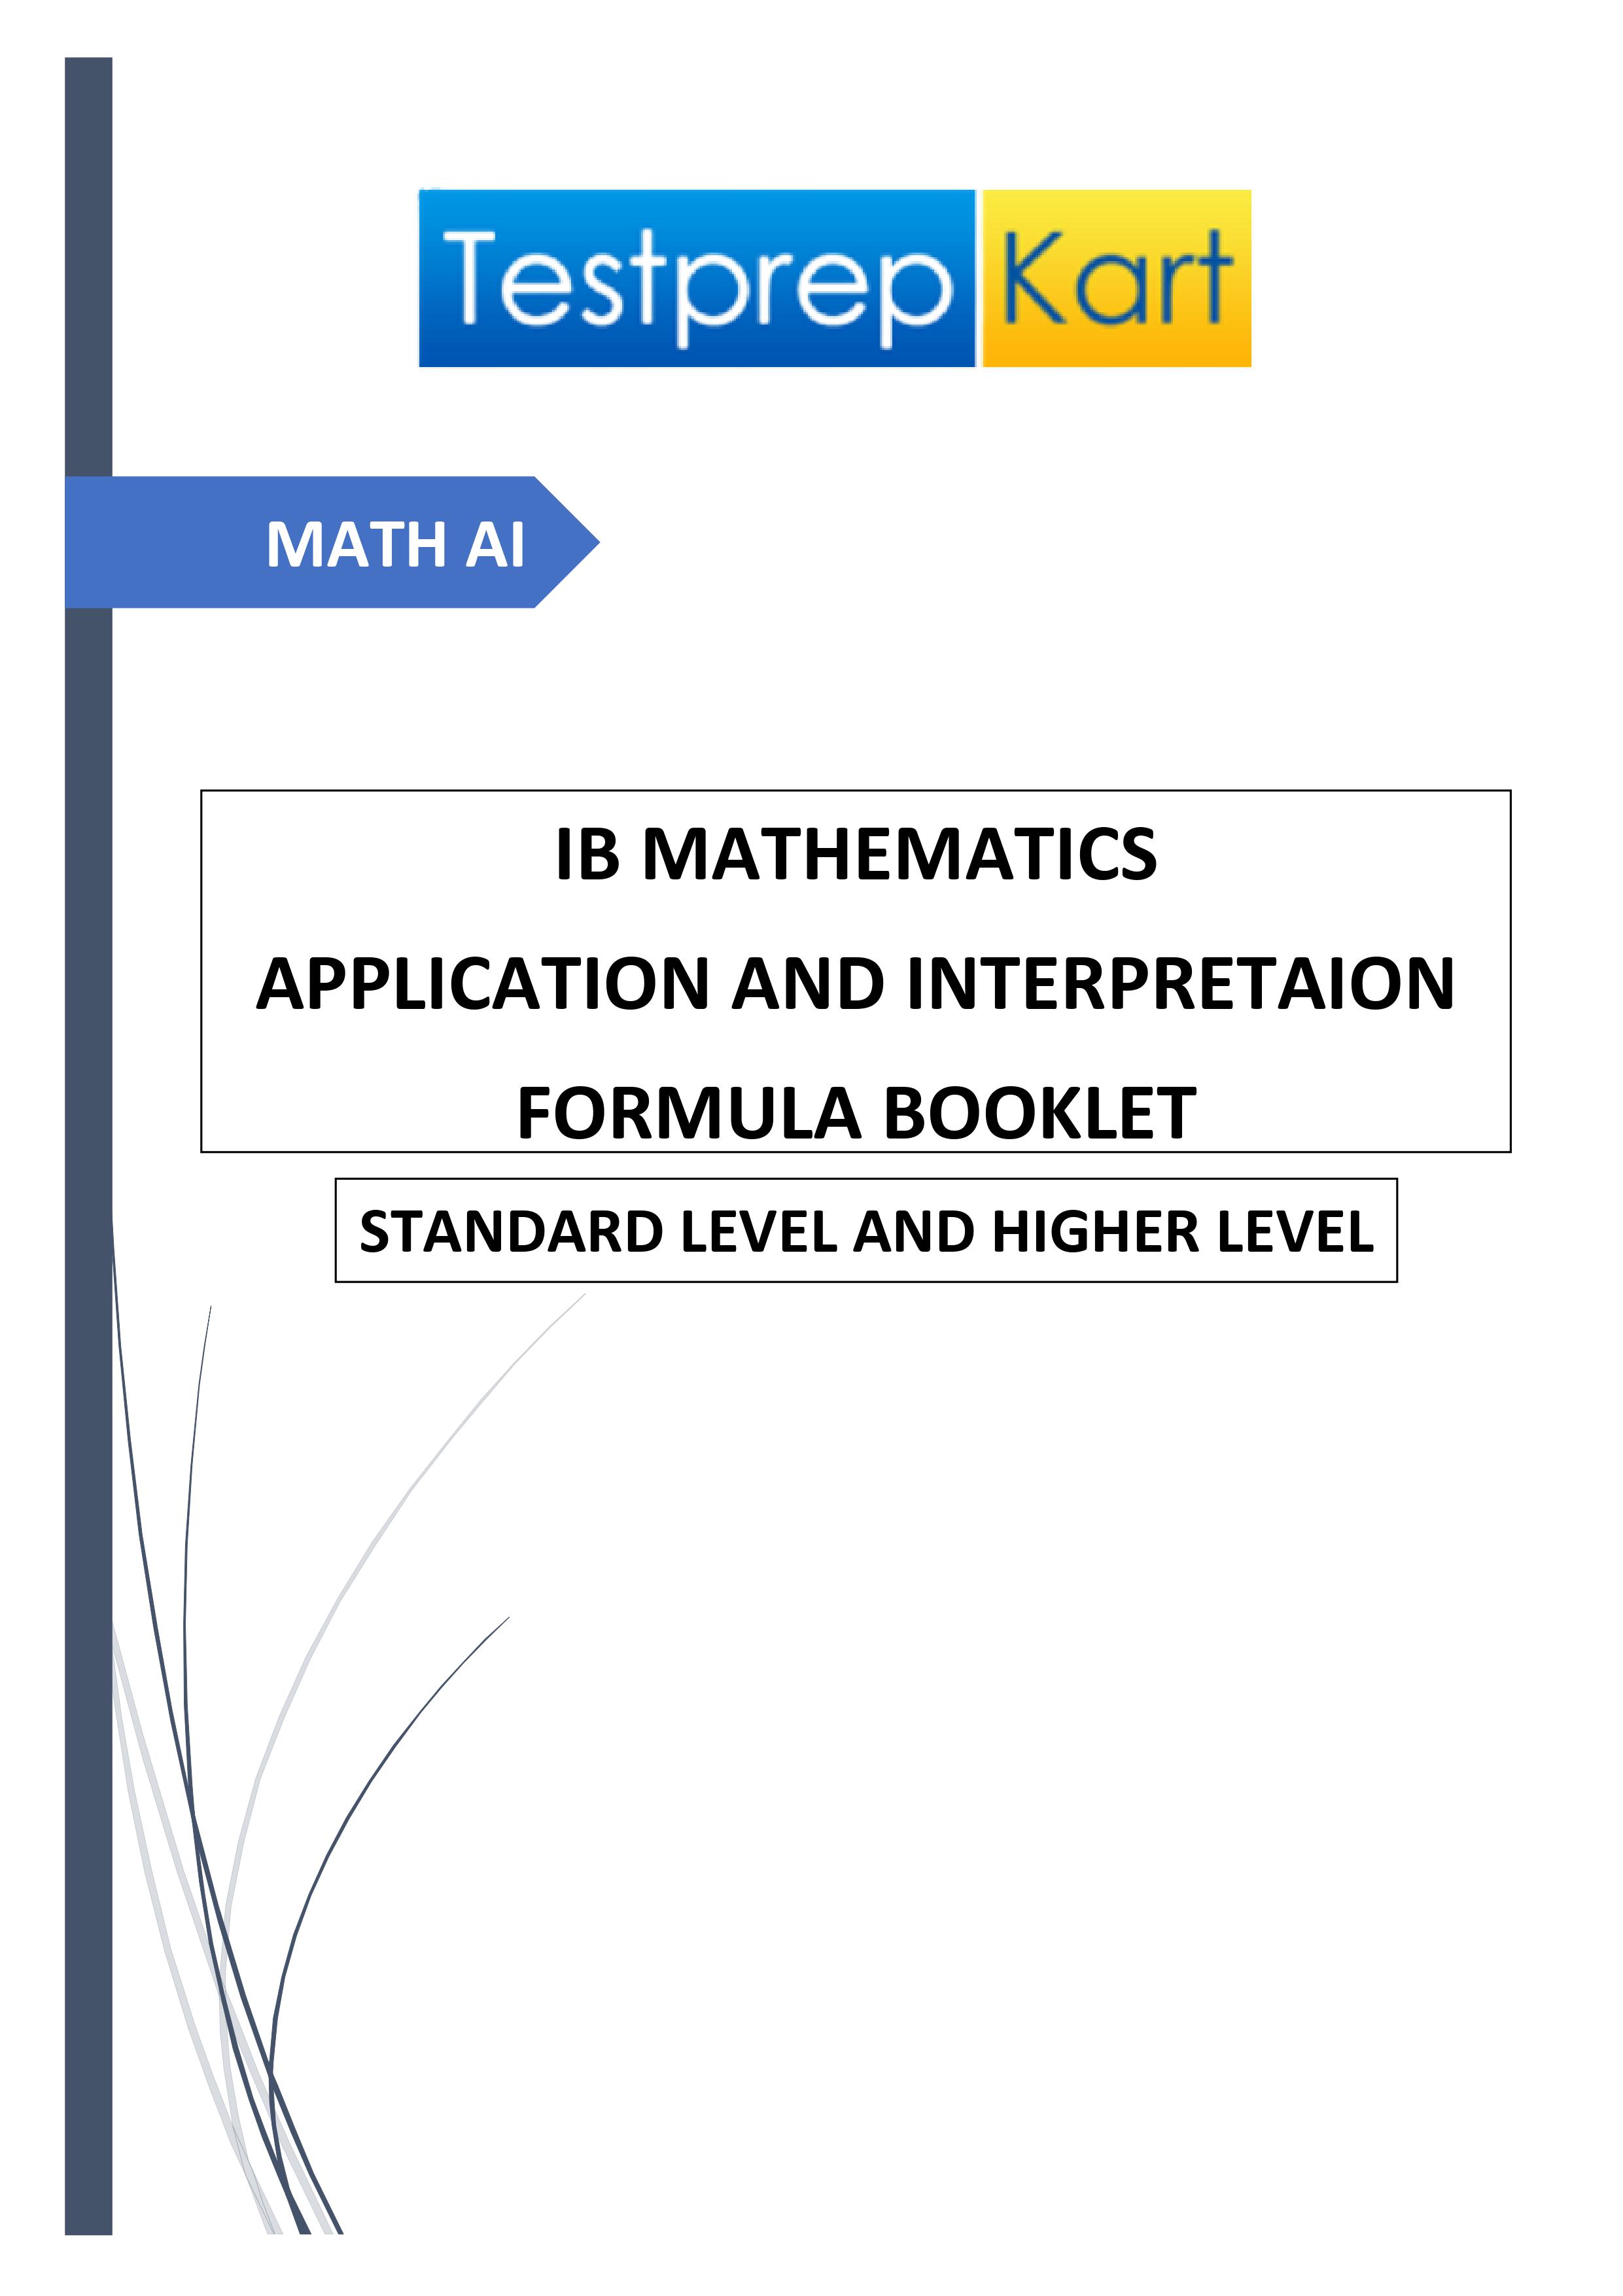 Download IB Mathematics Applications and Interpretation SL/HL booklet download